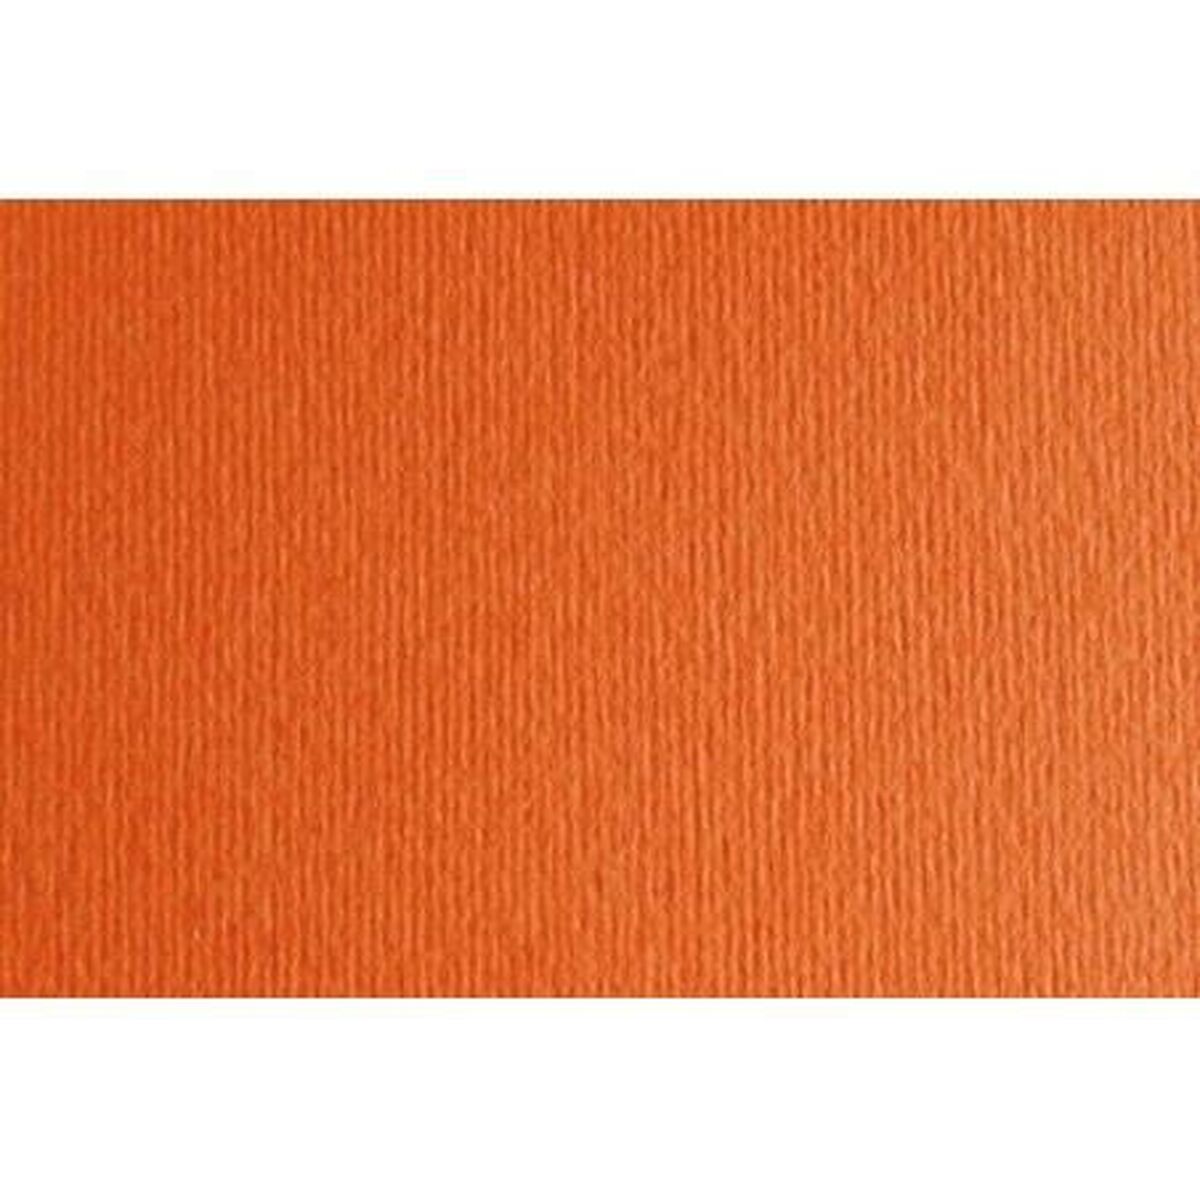 Papp Sadipal LR 220 Orange Strukturerad 50 x 70 cm (20 antal)-Hem och matlagning, Sömnad och hantverk-Sadipal-peaceofhome.se